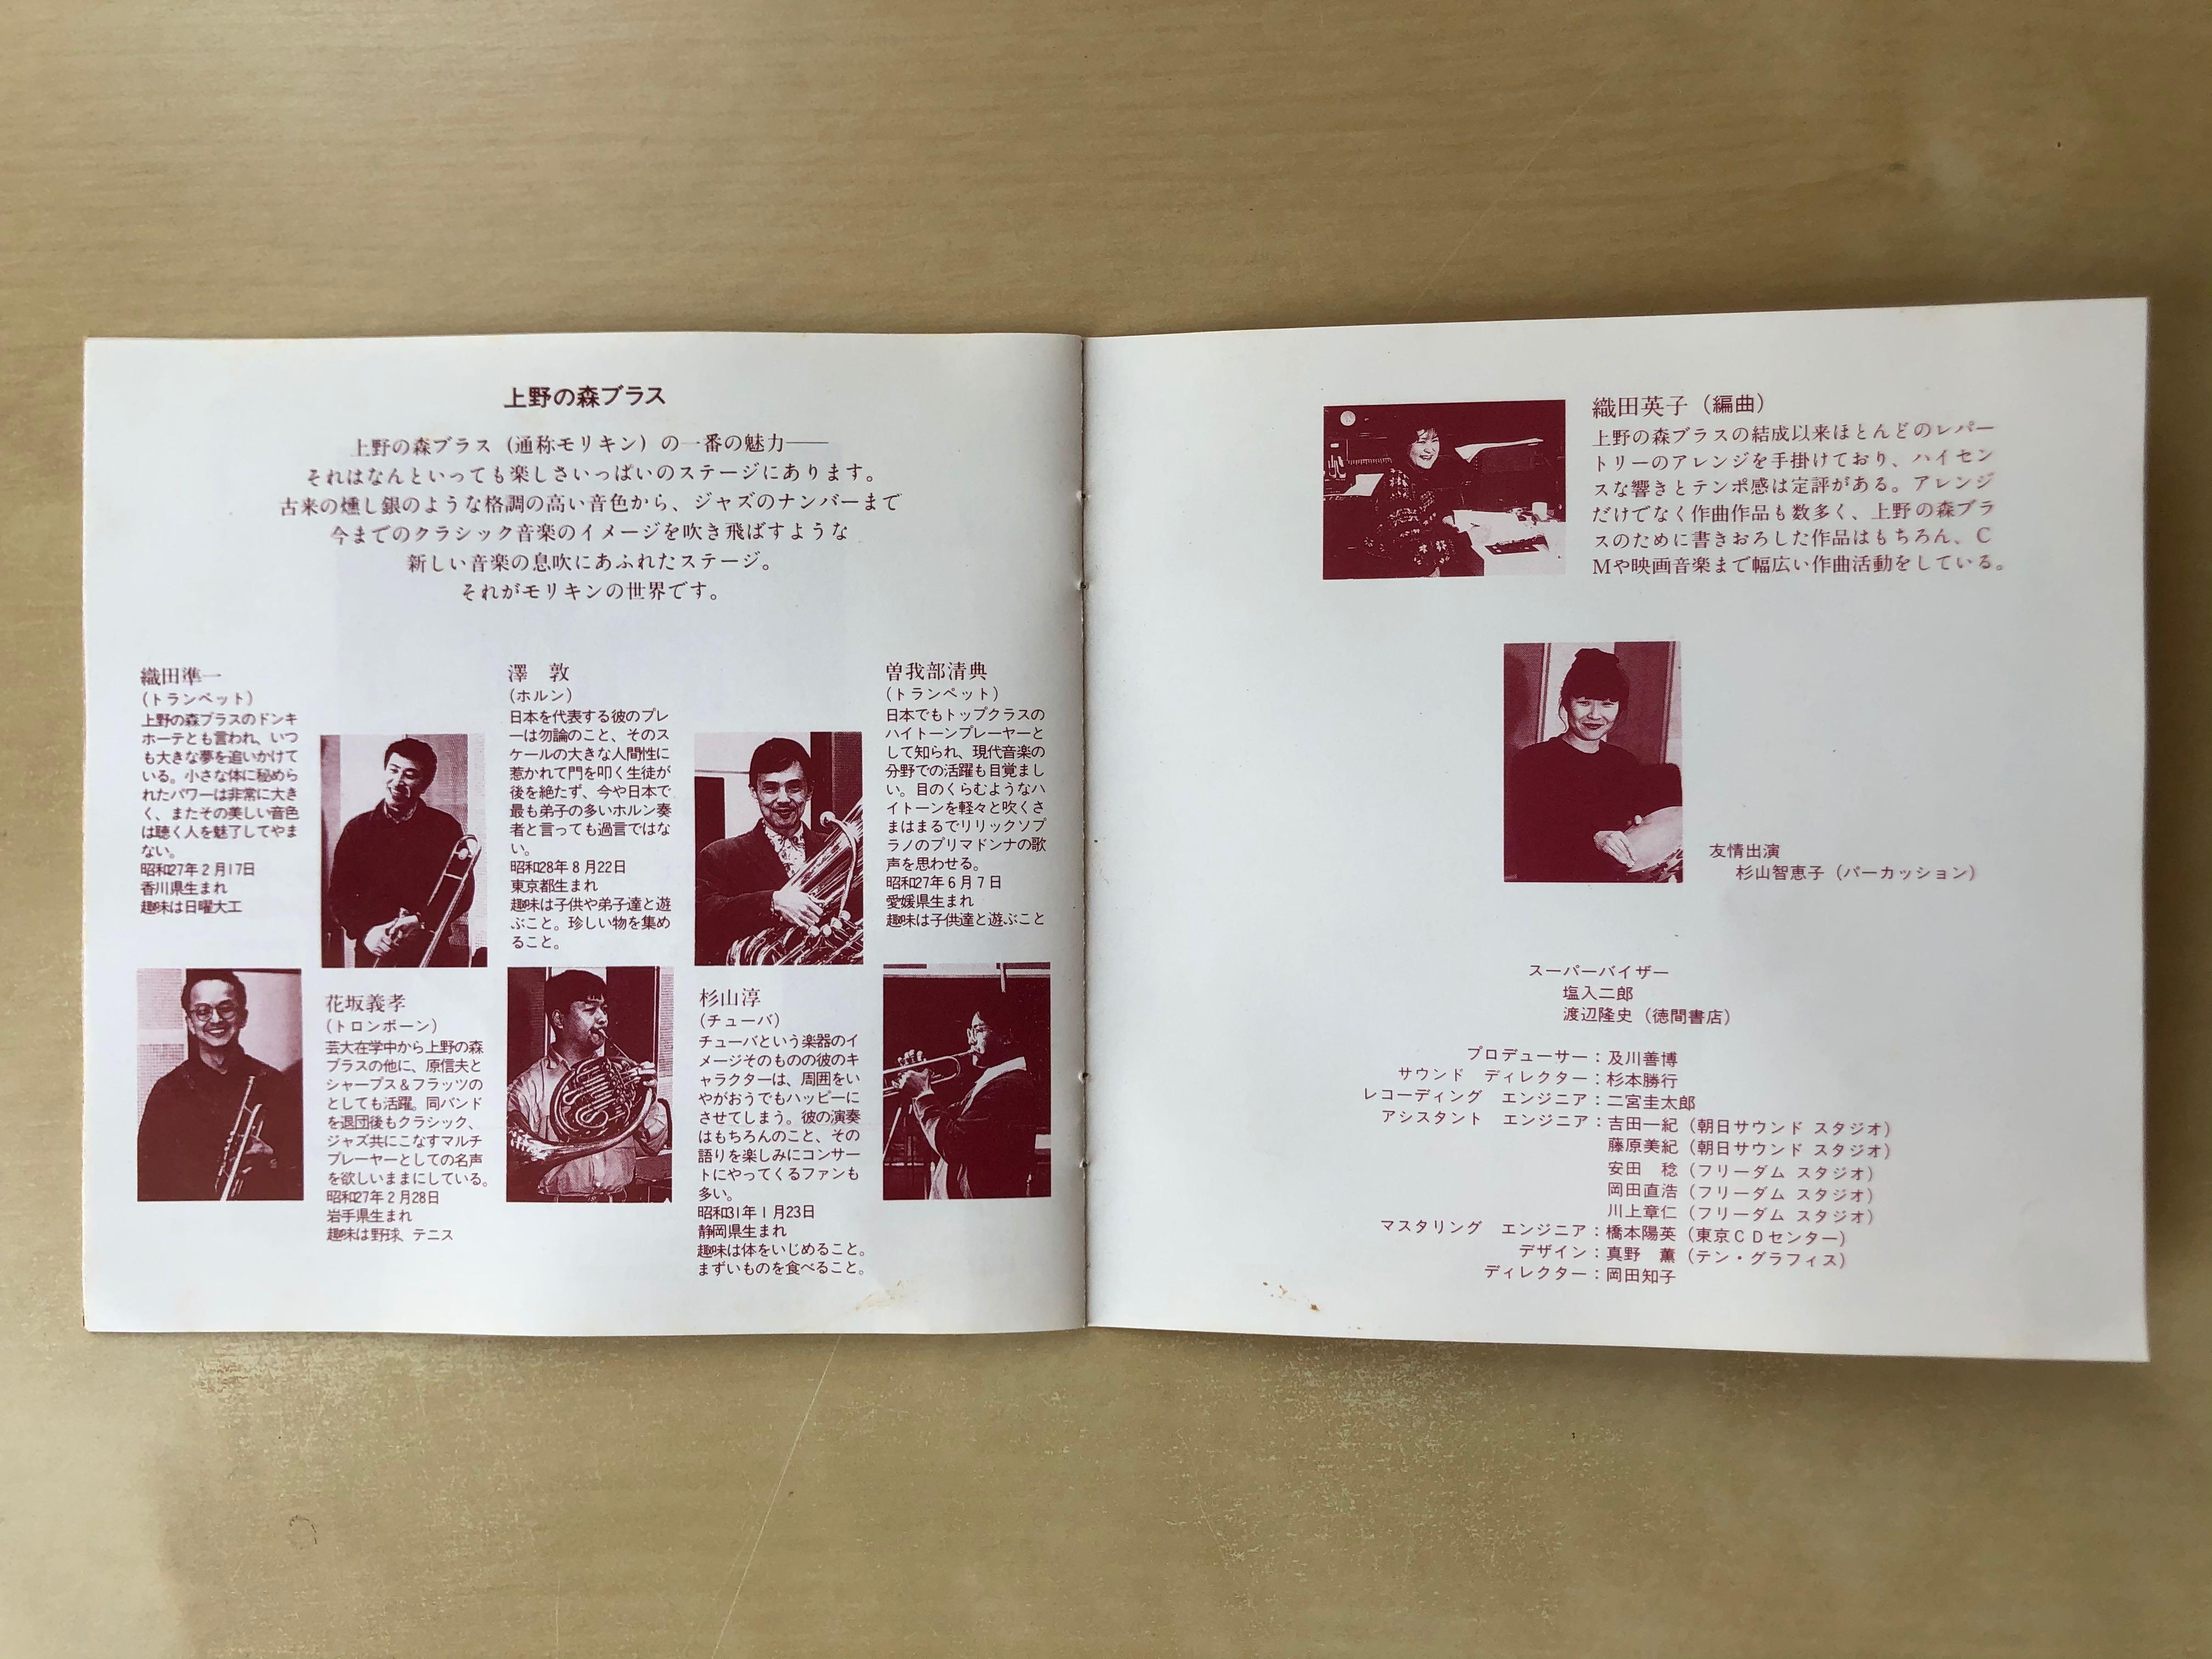 CD丨上野の森ブラスブラスファンタジア2 宮崎アニメ作品集Brass